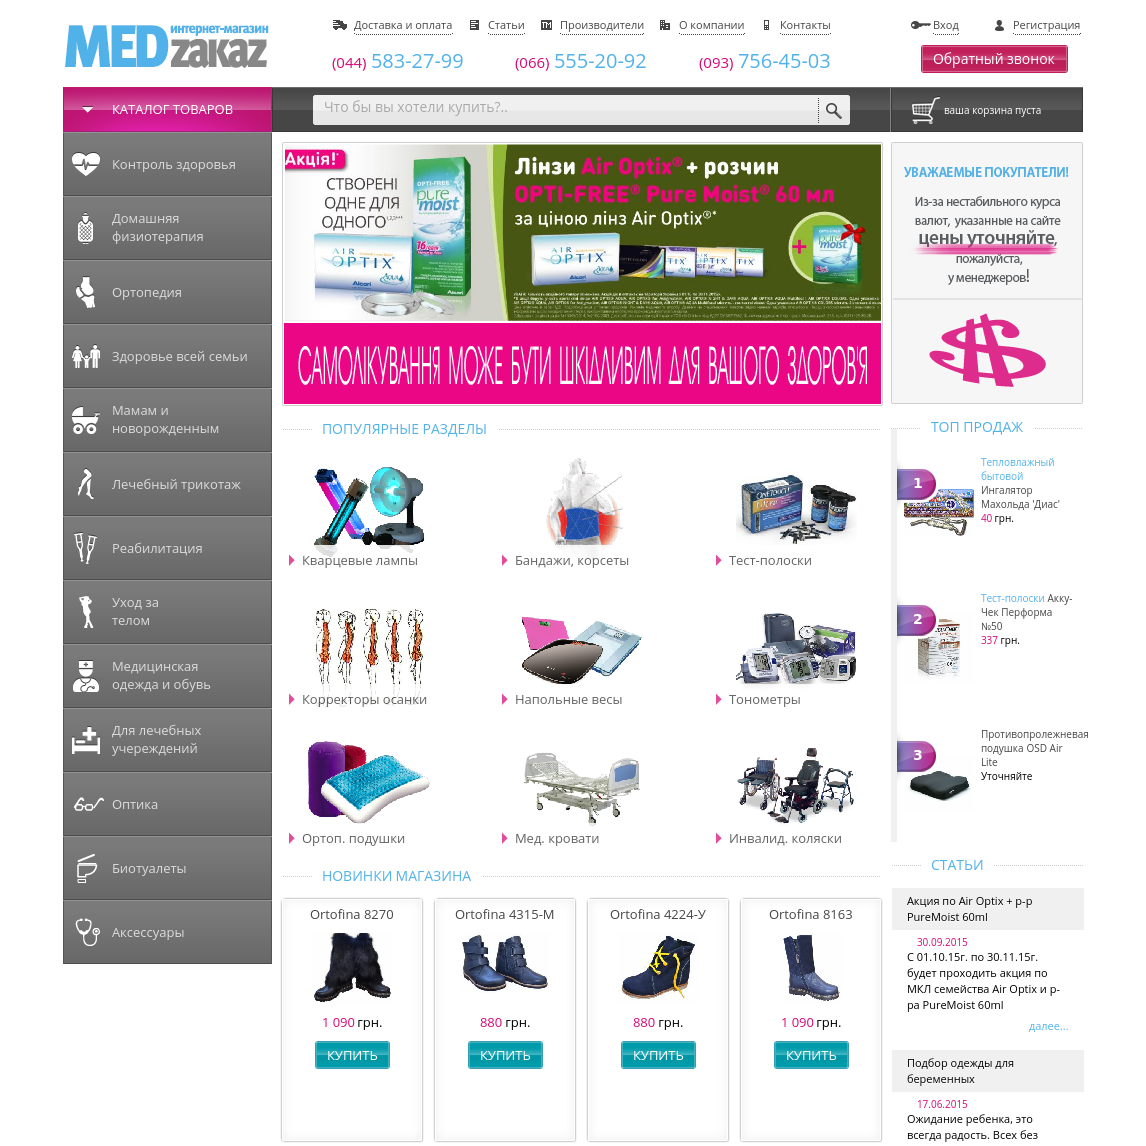 Интернет магазин медтехники «Medzakaz»